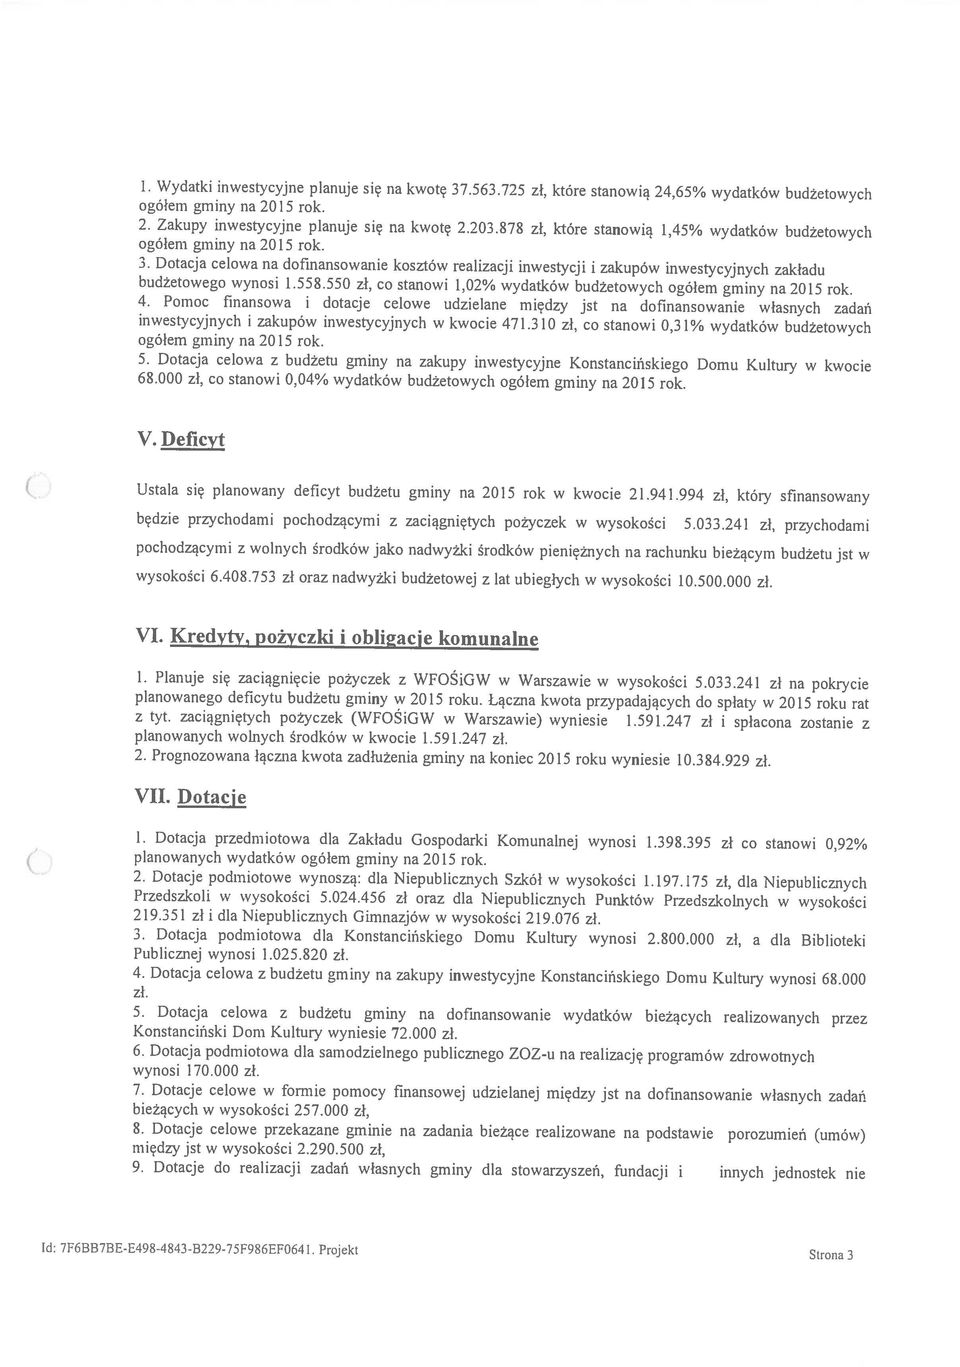 Dotacja celowa z budżetu gminy na zakupy inwestycyjne Konstancińskiego Domu Kultury w kwocie budżetowego wynosi 1.558.550 zł, co stanowi 1,02% wydatków budżetowych ogółem gminy na 2015 rok.